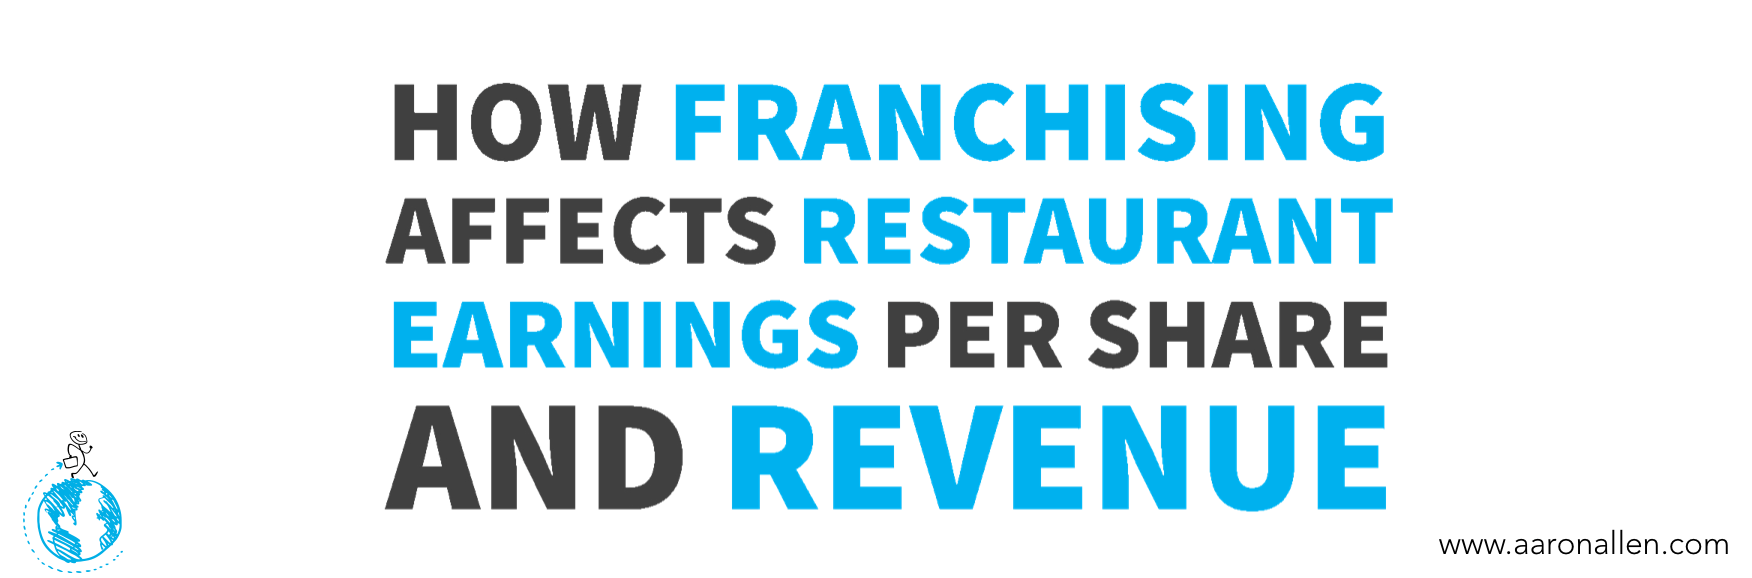 Franchise Restaurant Earnings